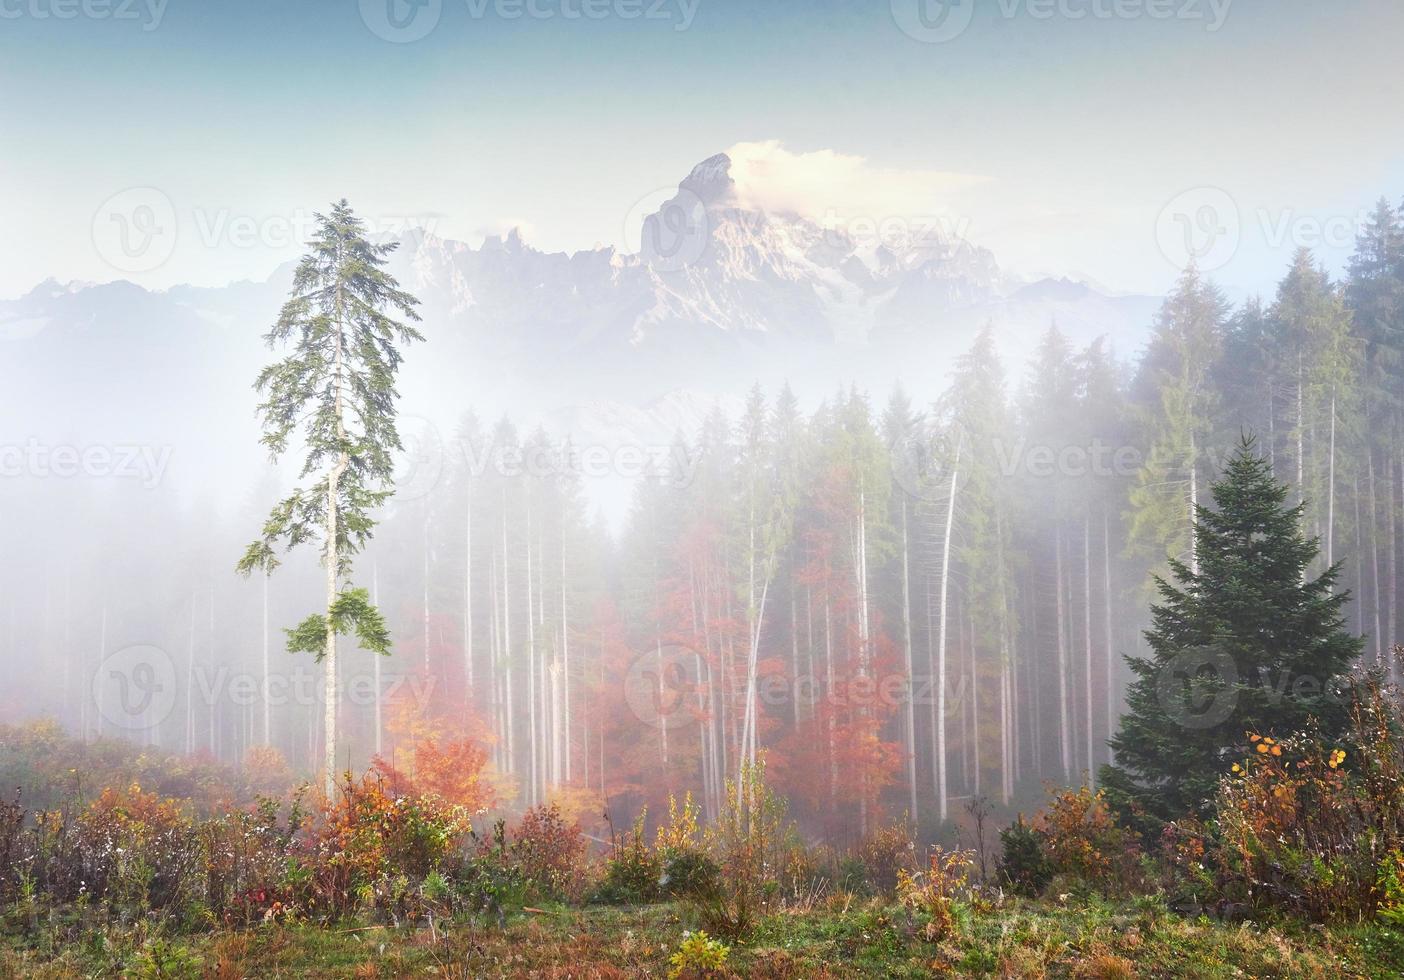 la niebla matutina se arrastra con restos sobre el bosque montañoso otoñal cubierto de hojas doradas. picos nevados de montañas majestuosas en el fondo foto